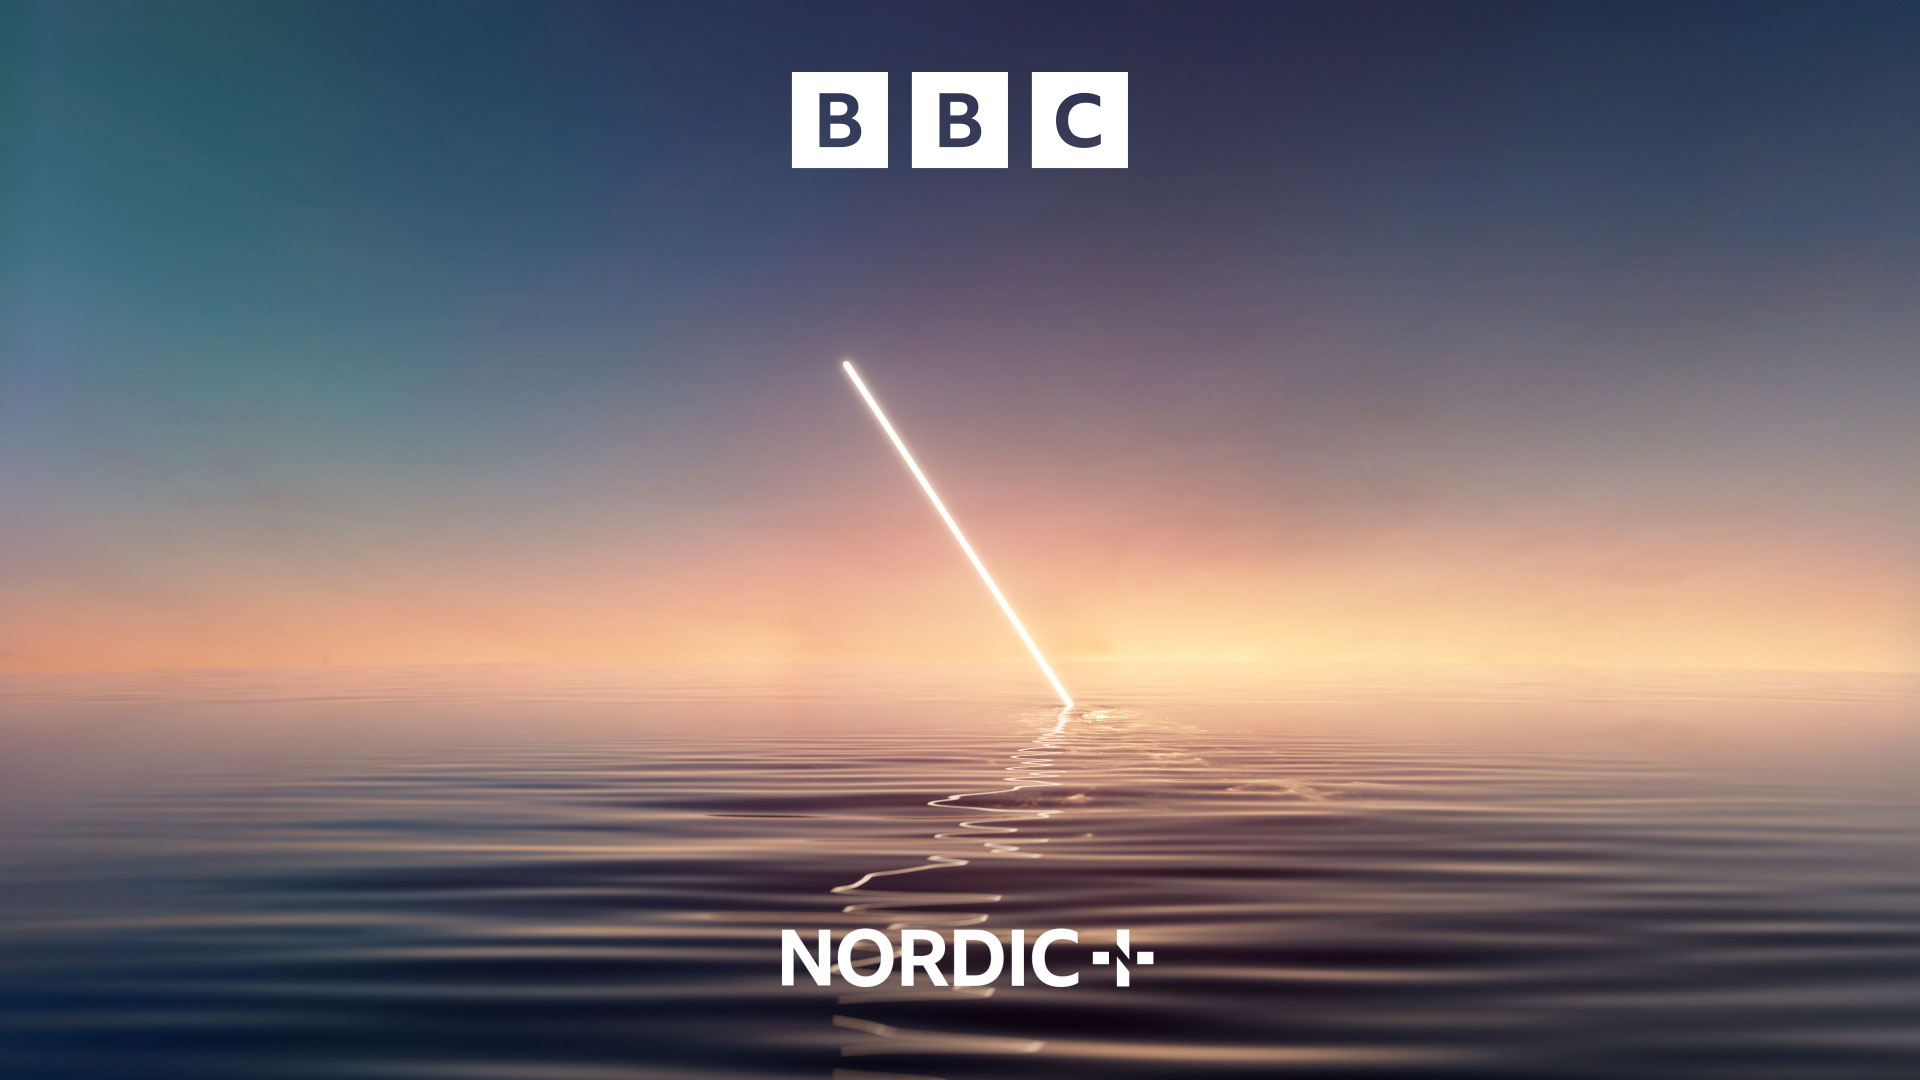 BBC NORDIC CHANNEL IDENTITY
Broadcast design :41